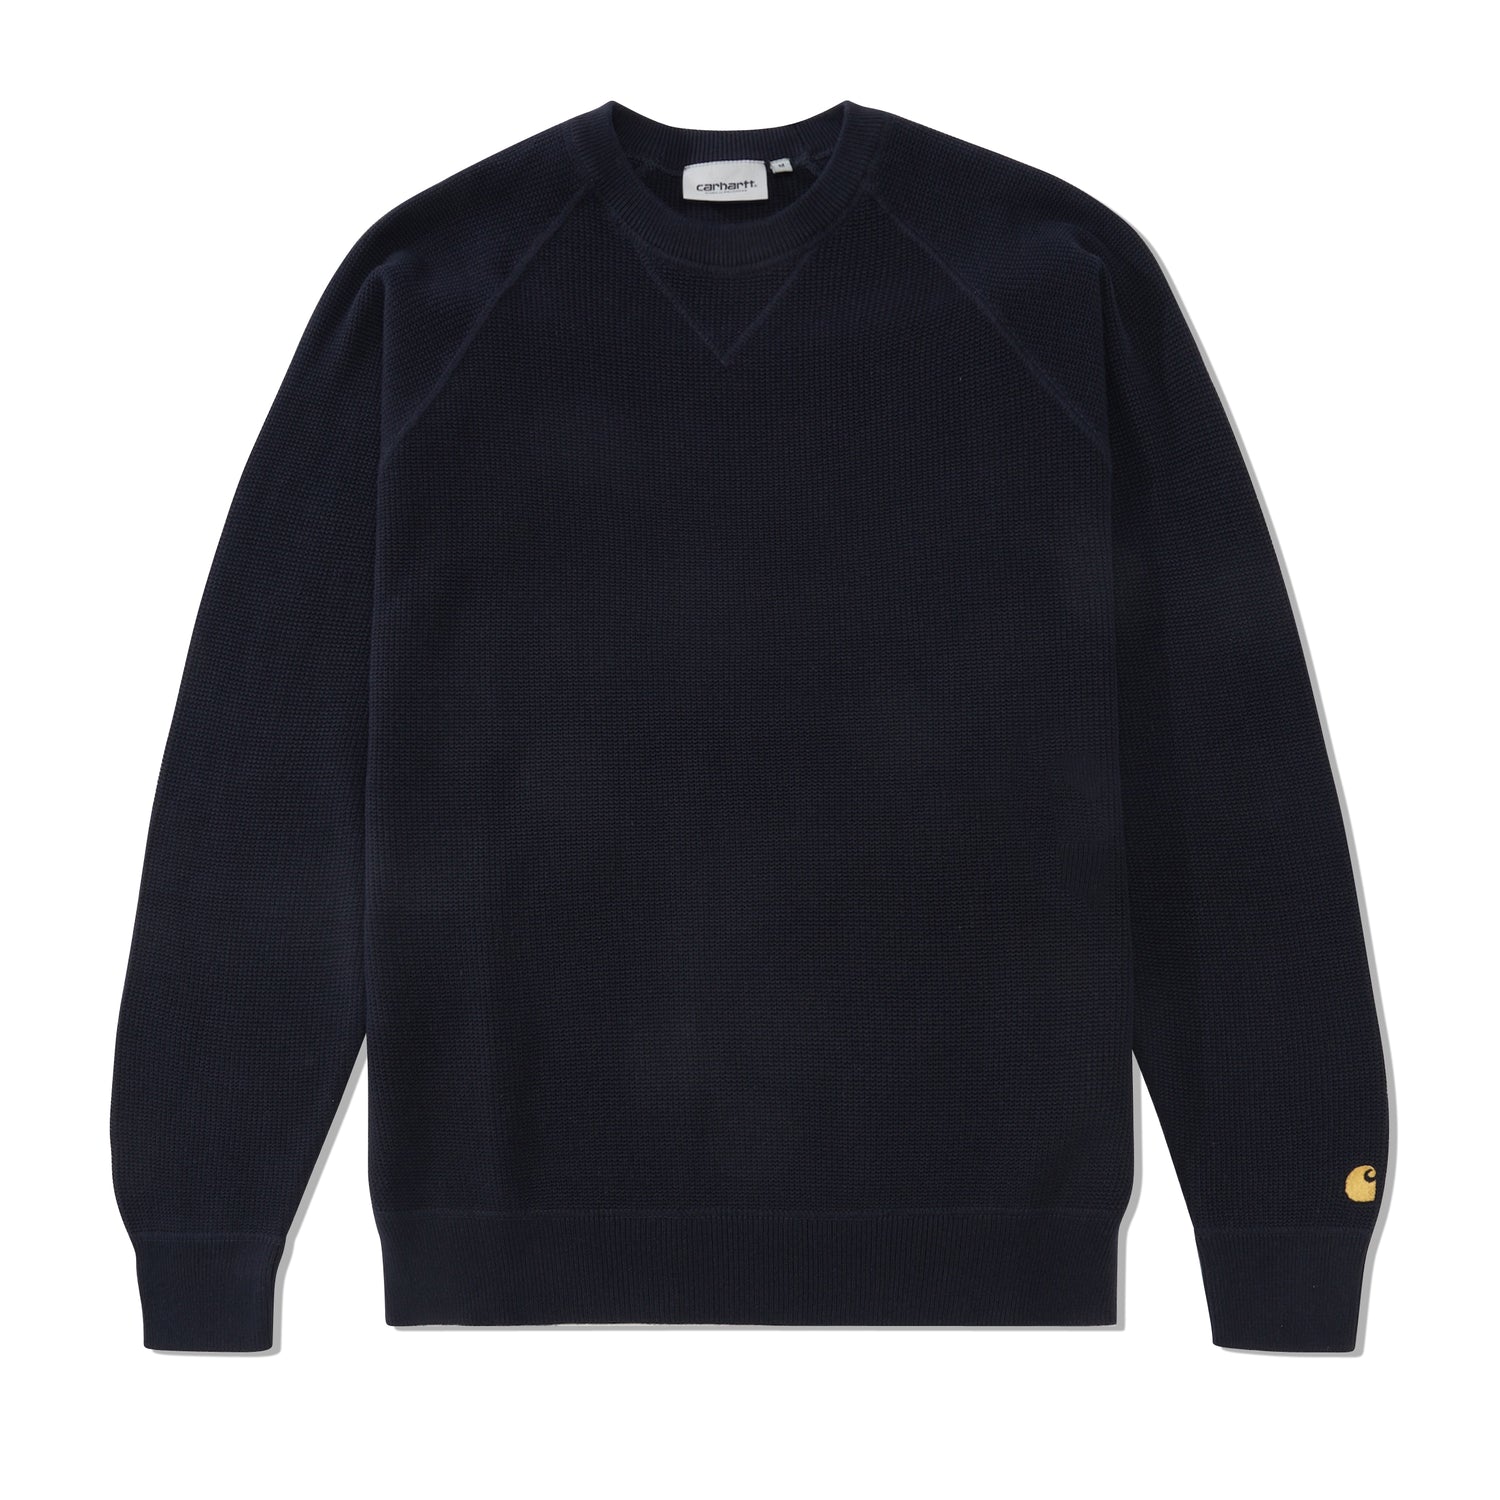 Chase Sweater, Dark Navy / Gold